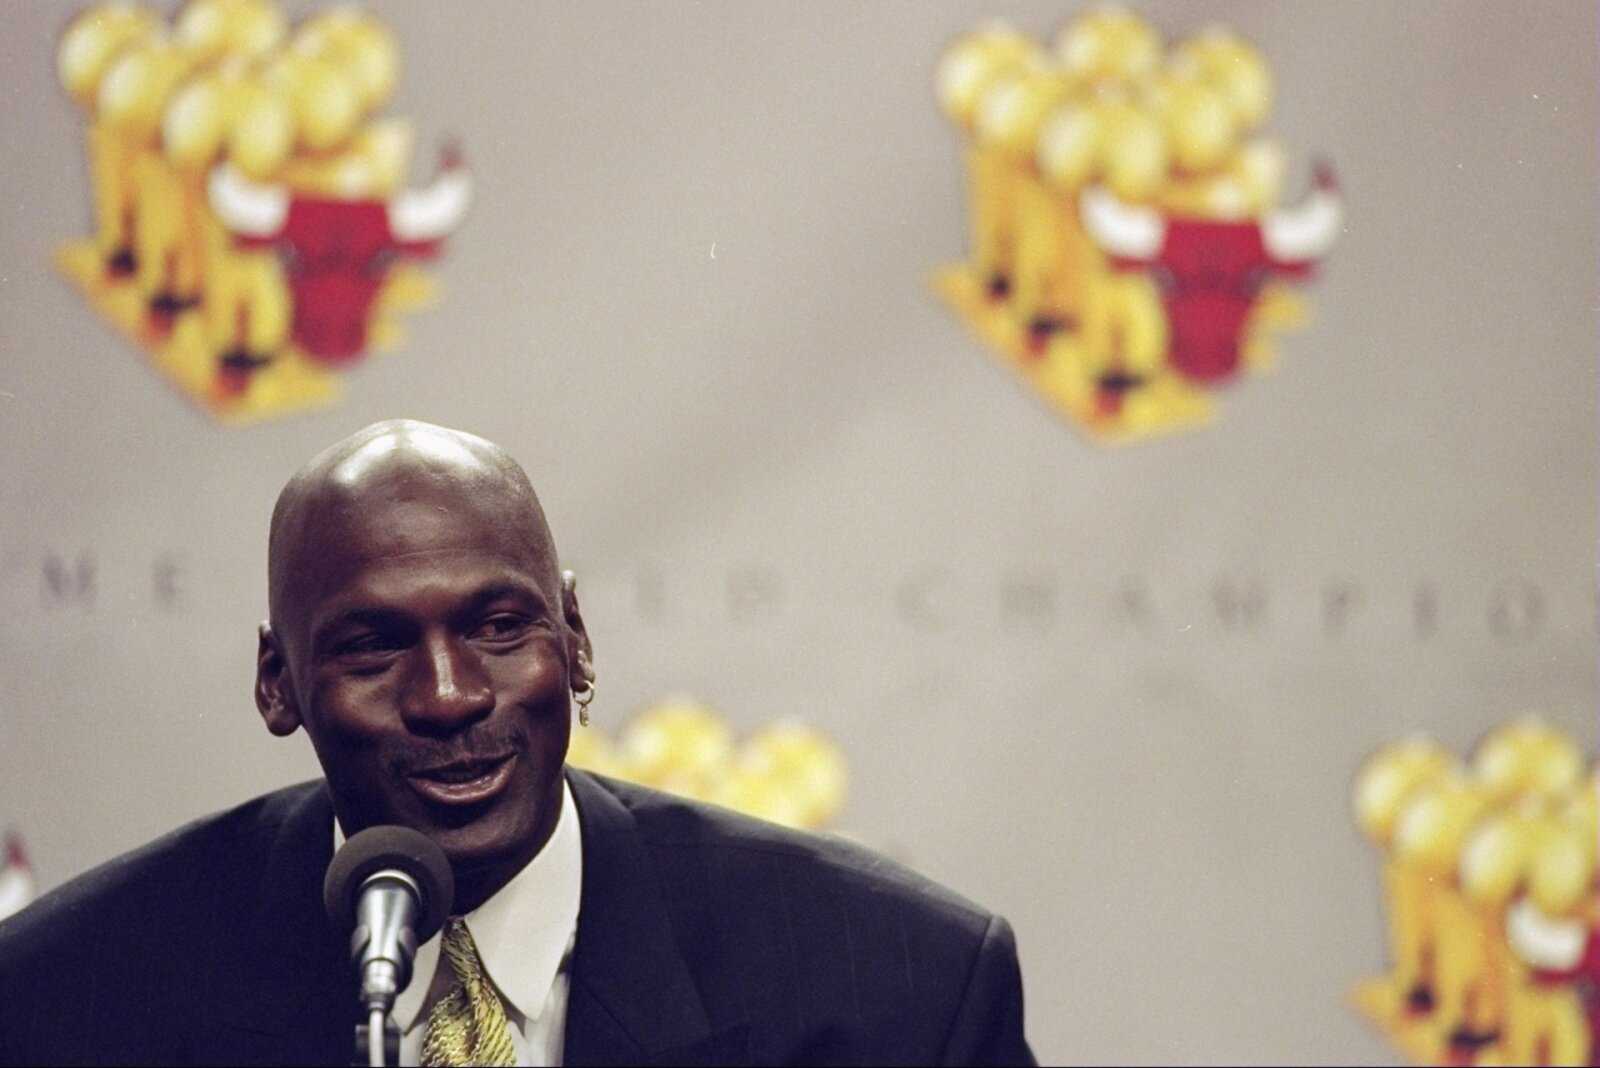 "Il a charmé tout le monde": un auteur sportif révèle à quel point Michael Jordan aimait l'attention des médias